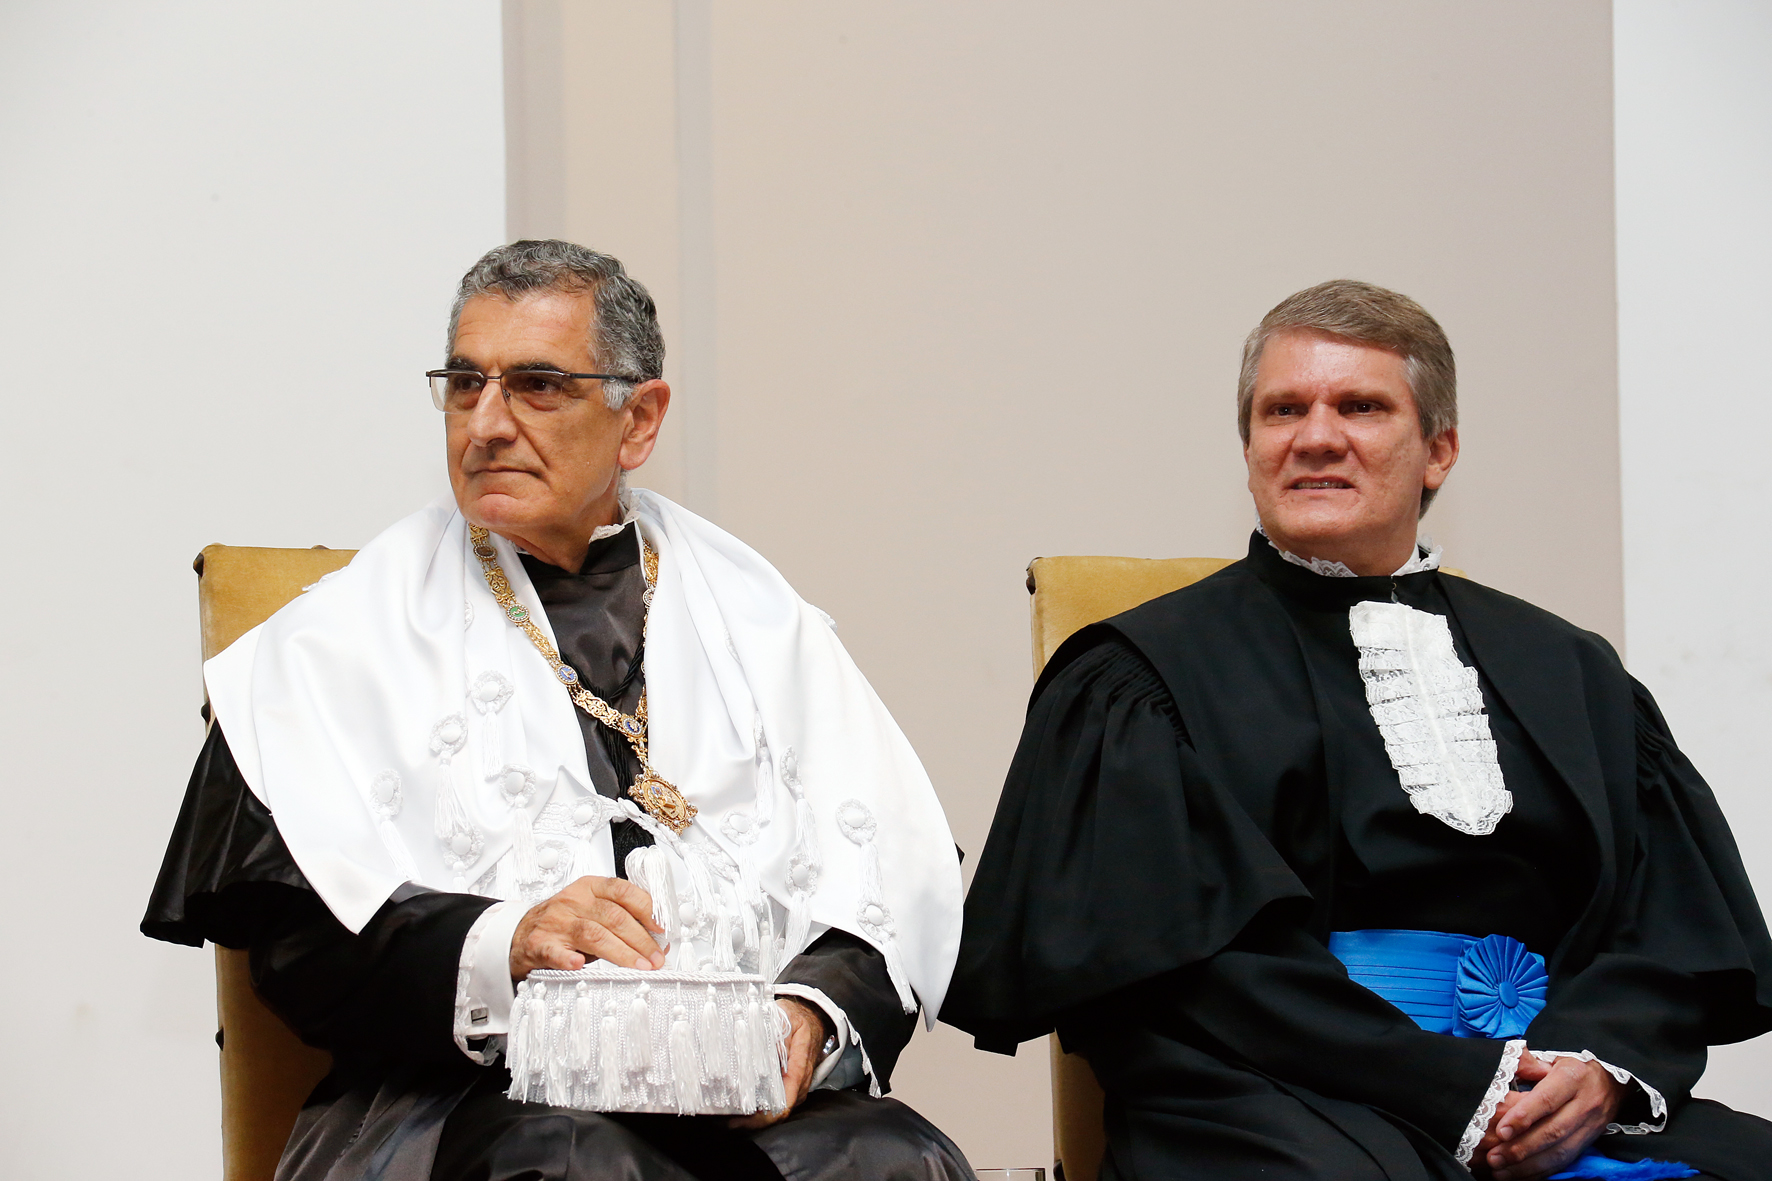 El nuevo rector y el nuevo vicerrector de la USP, Vahan Agopyan y Antonio Carlos Hernandes